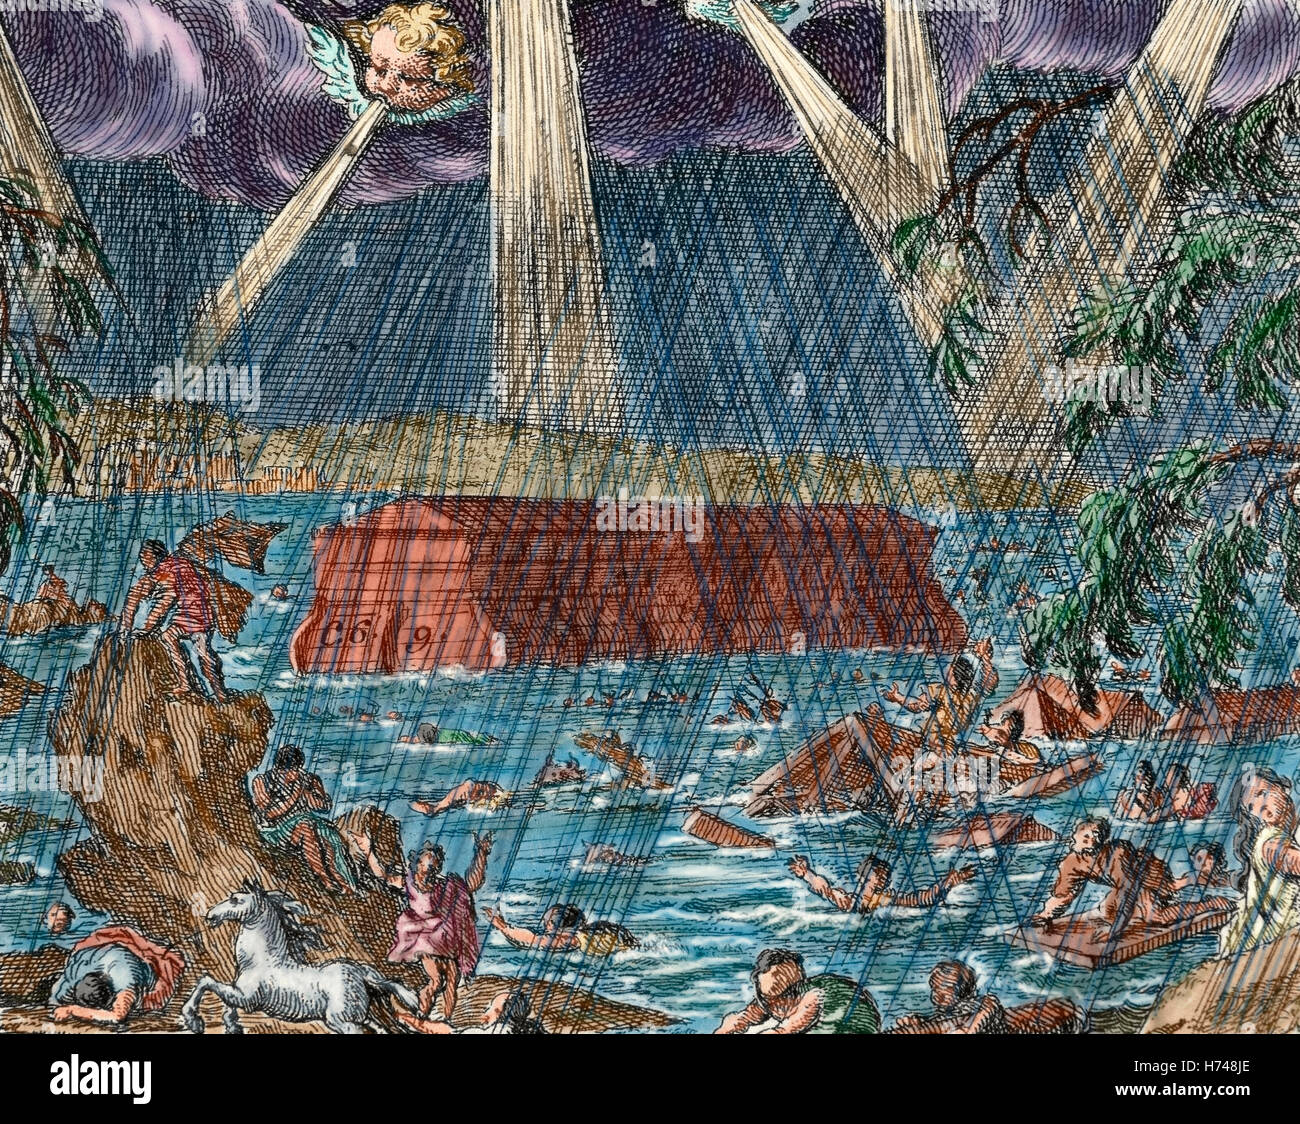 El Diluvio. Noah's Ark Libro del Génesis. Los Capítulos 6-9. Grabado. Coloreada. Foto de stock